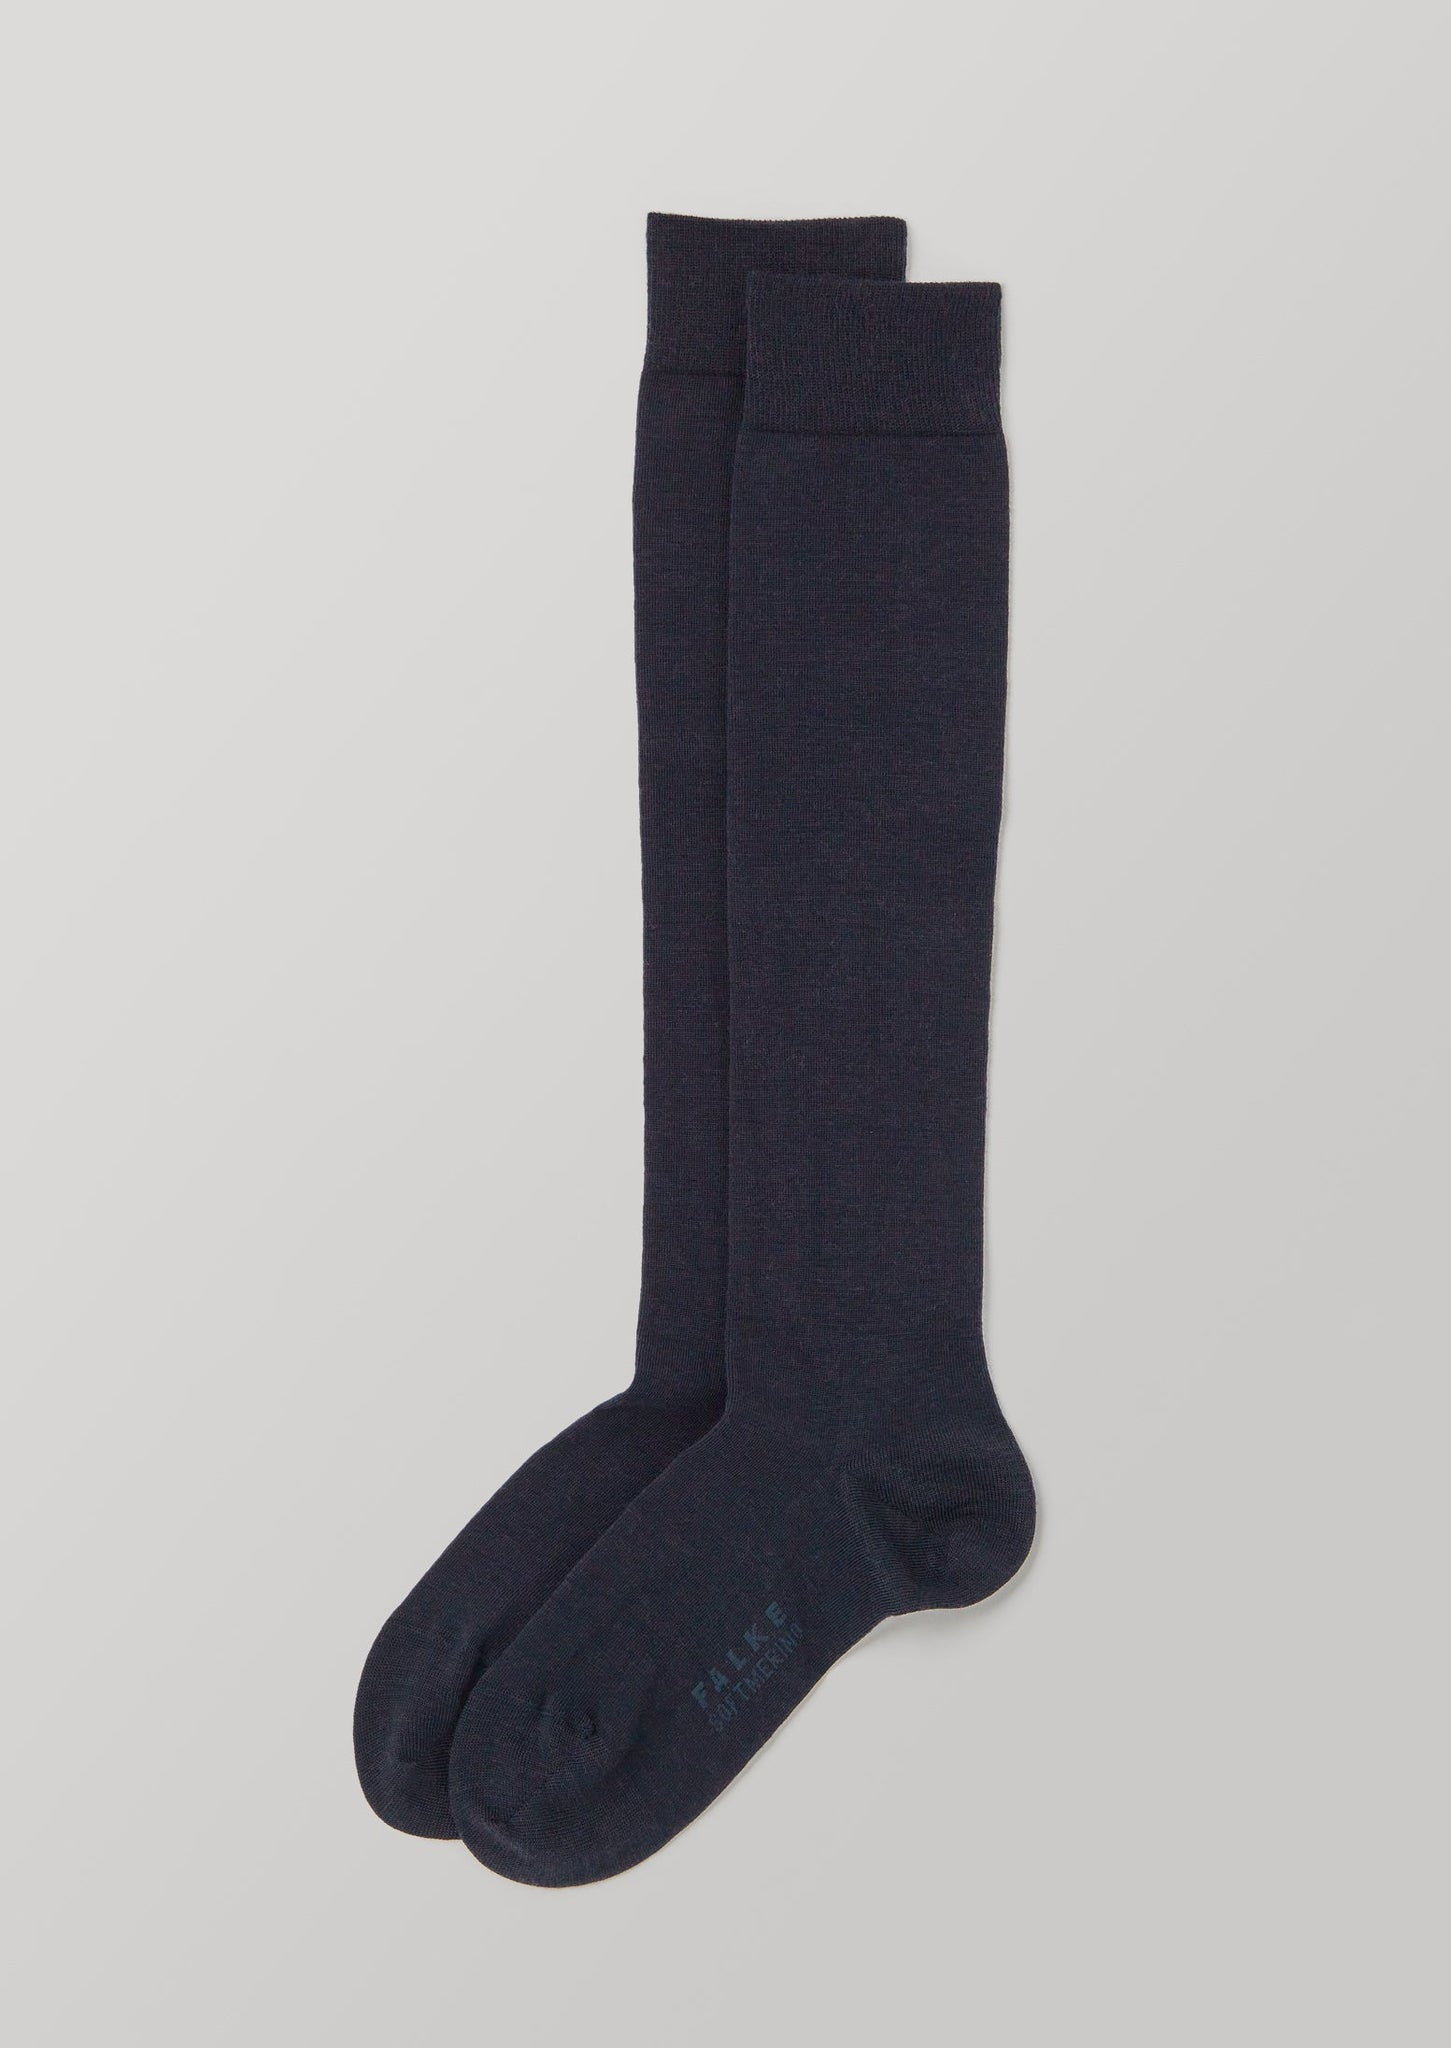 Falke Merino Knee High Socks | Navy